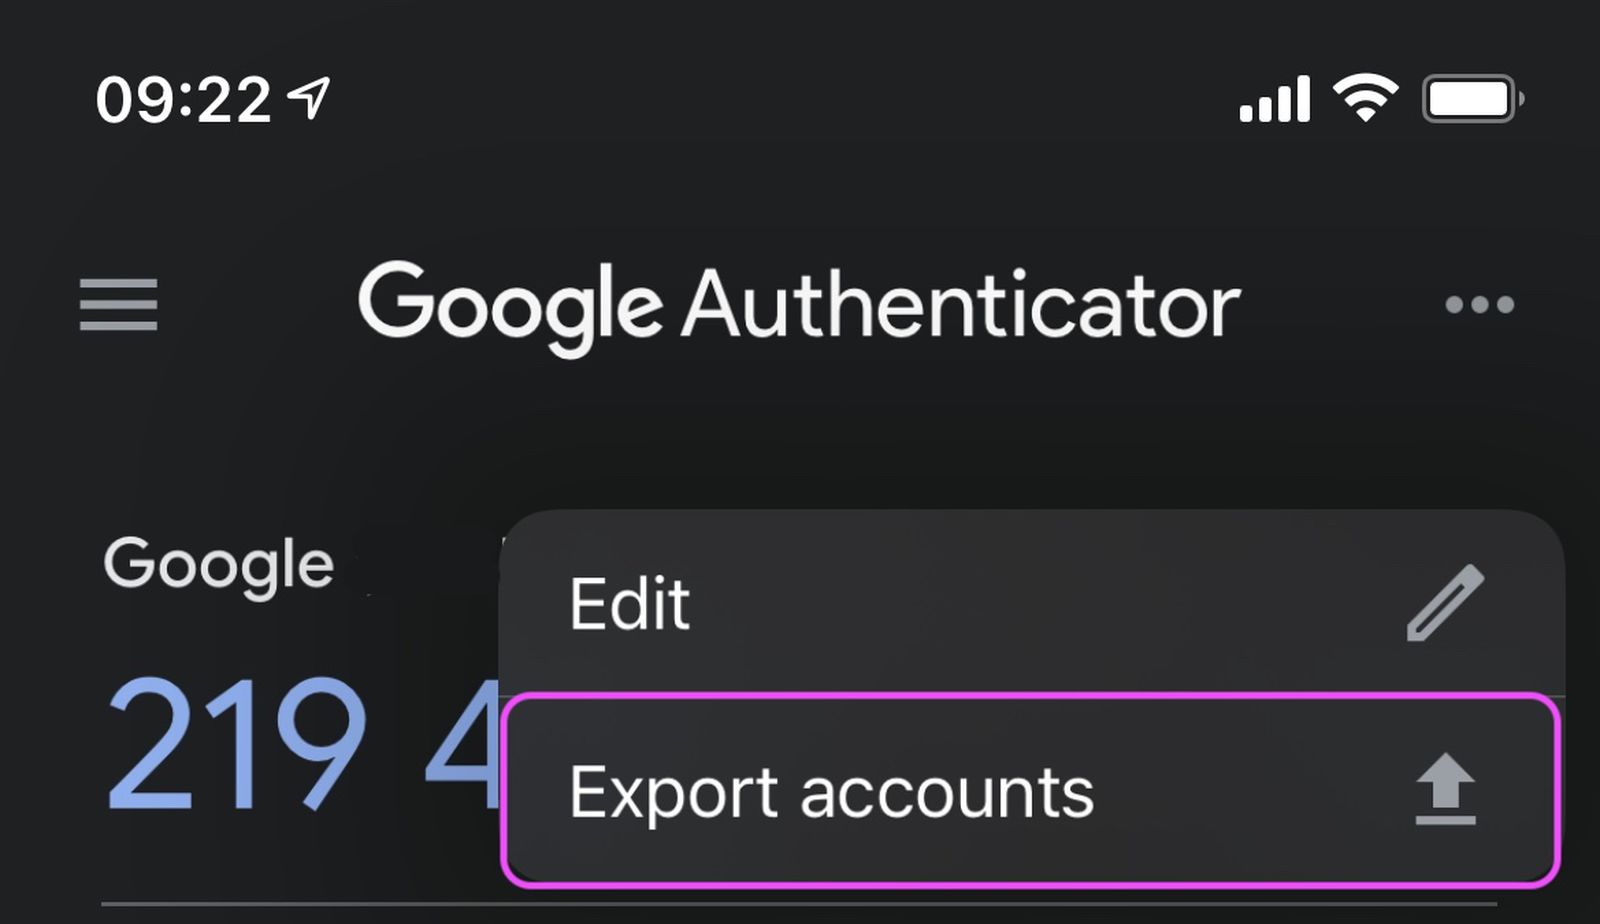 google authenticator ios app gains new